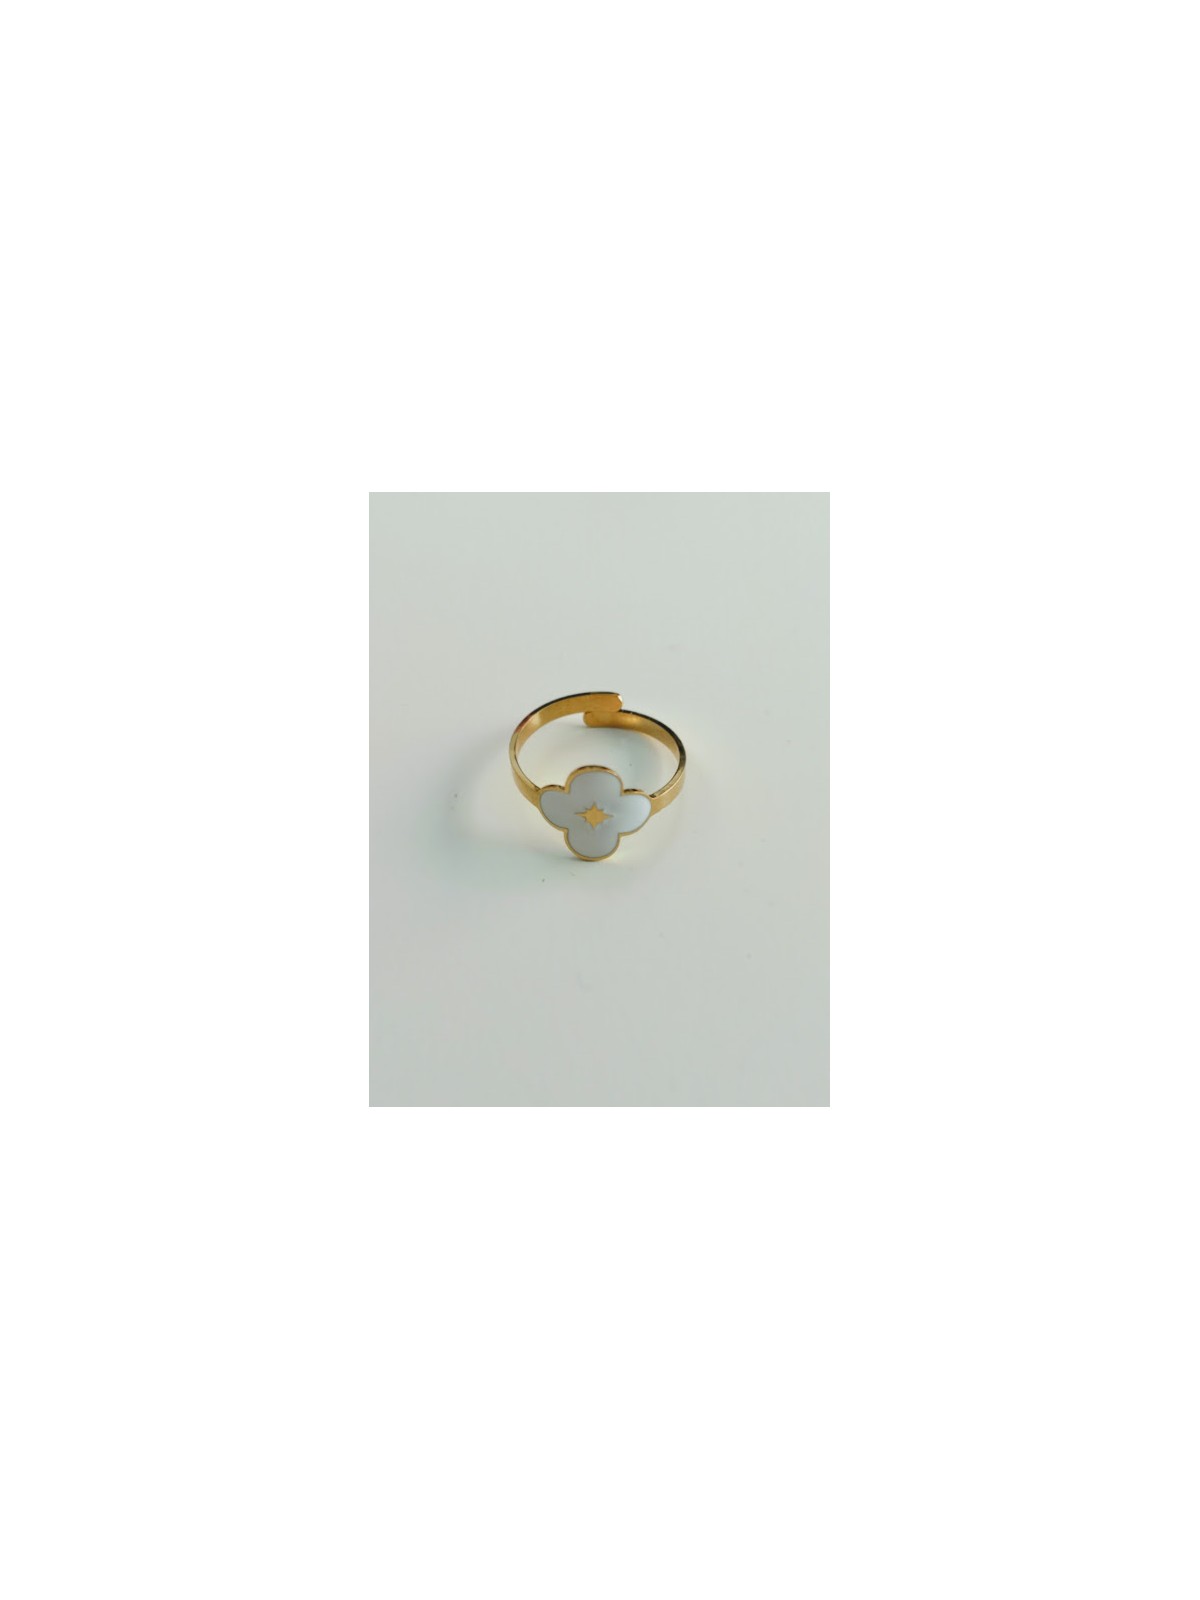 Bague ajustable blanches et or avec motif fleur | 2 vue à plat | Tilleulmenthe boutique de mode femme en ligne